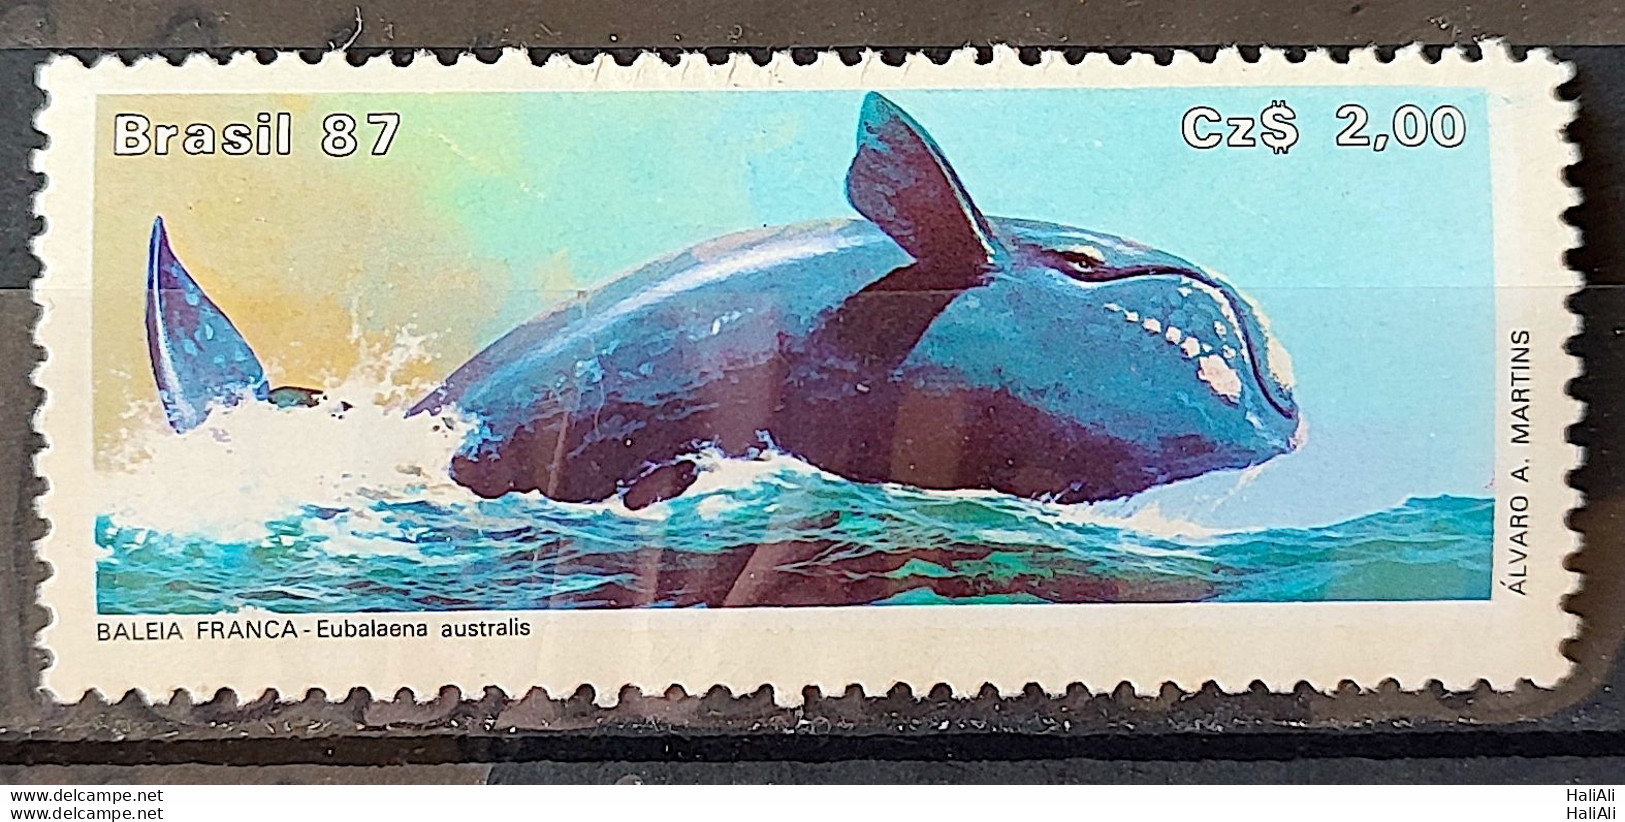 C 1550 Brazil Stamp Brazilian Fauna Whale Frank 1987 1 - Neufs